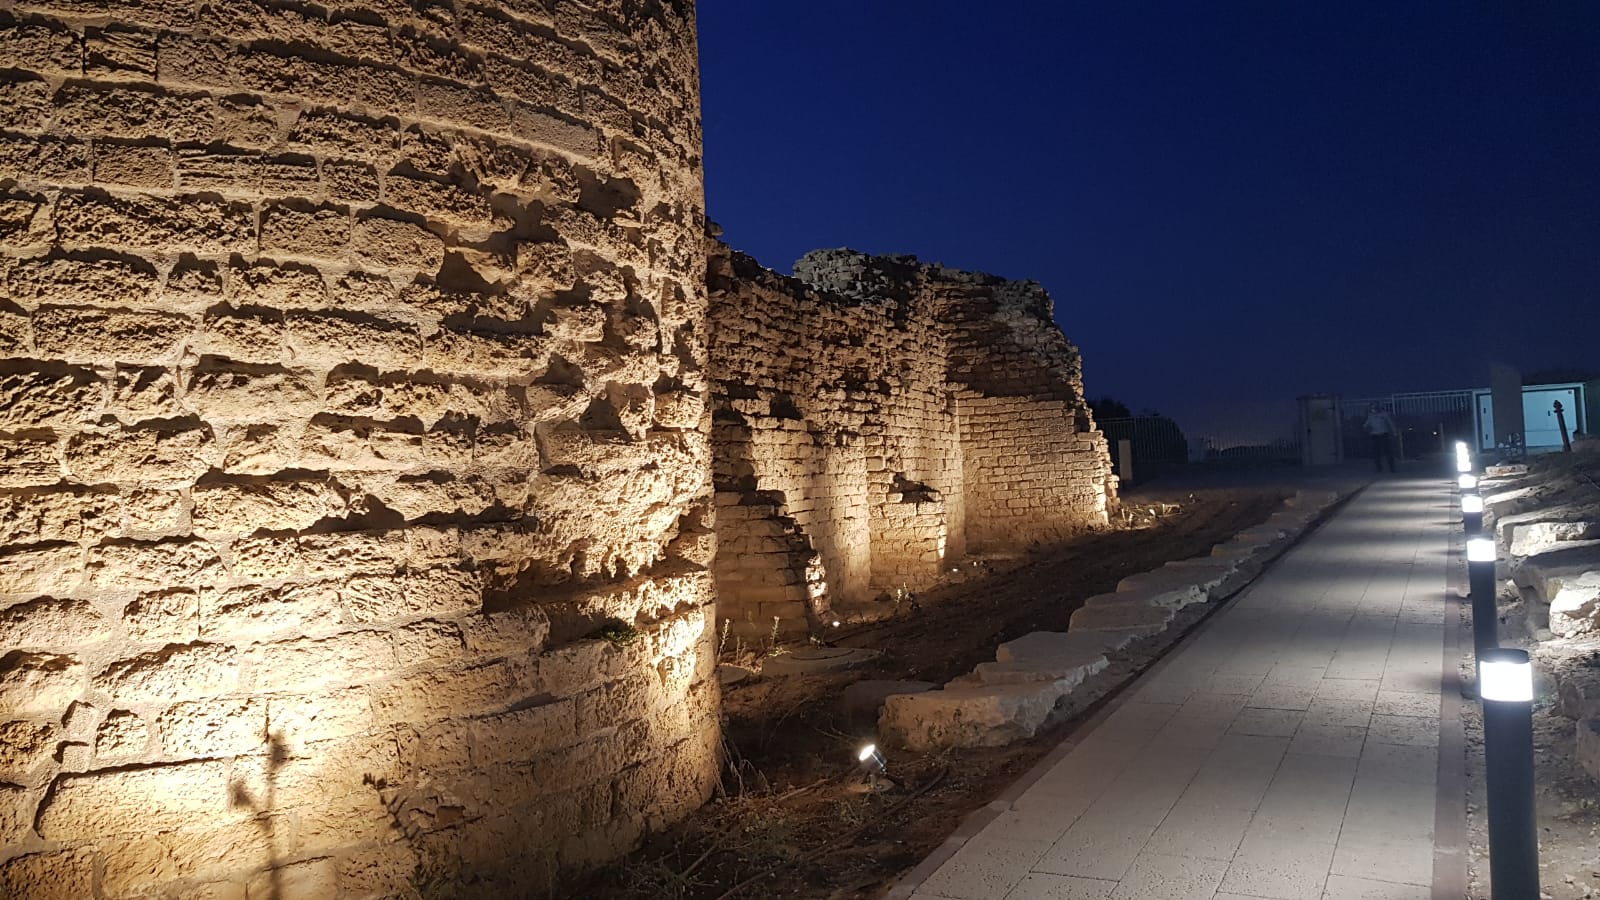 מצודת אשדוד-ים מוארת. צילום: עופר אשטוקר